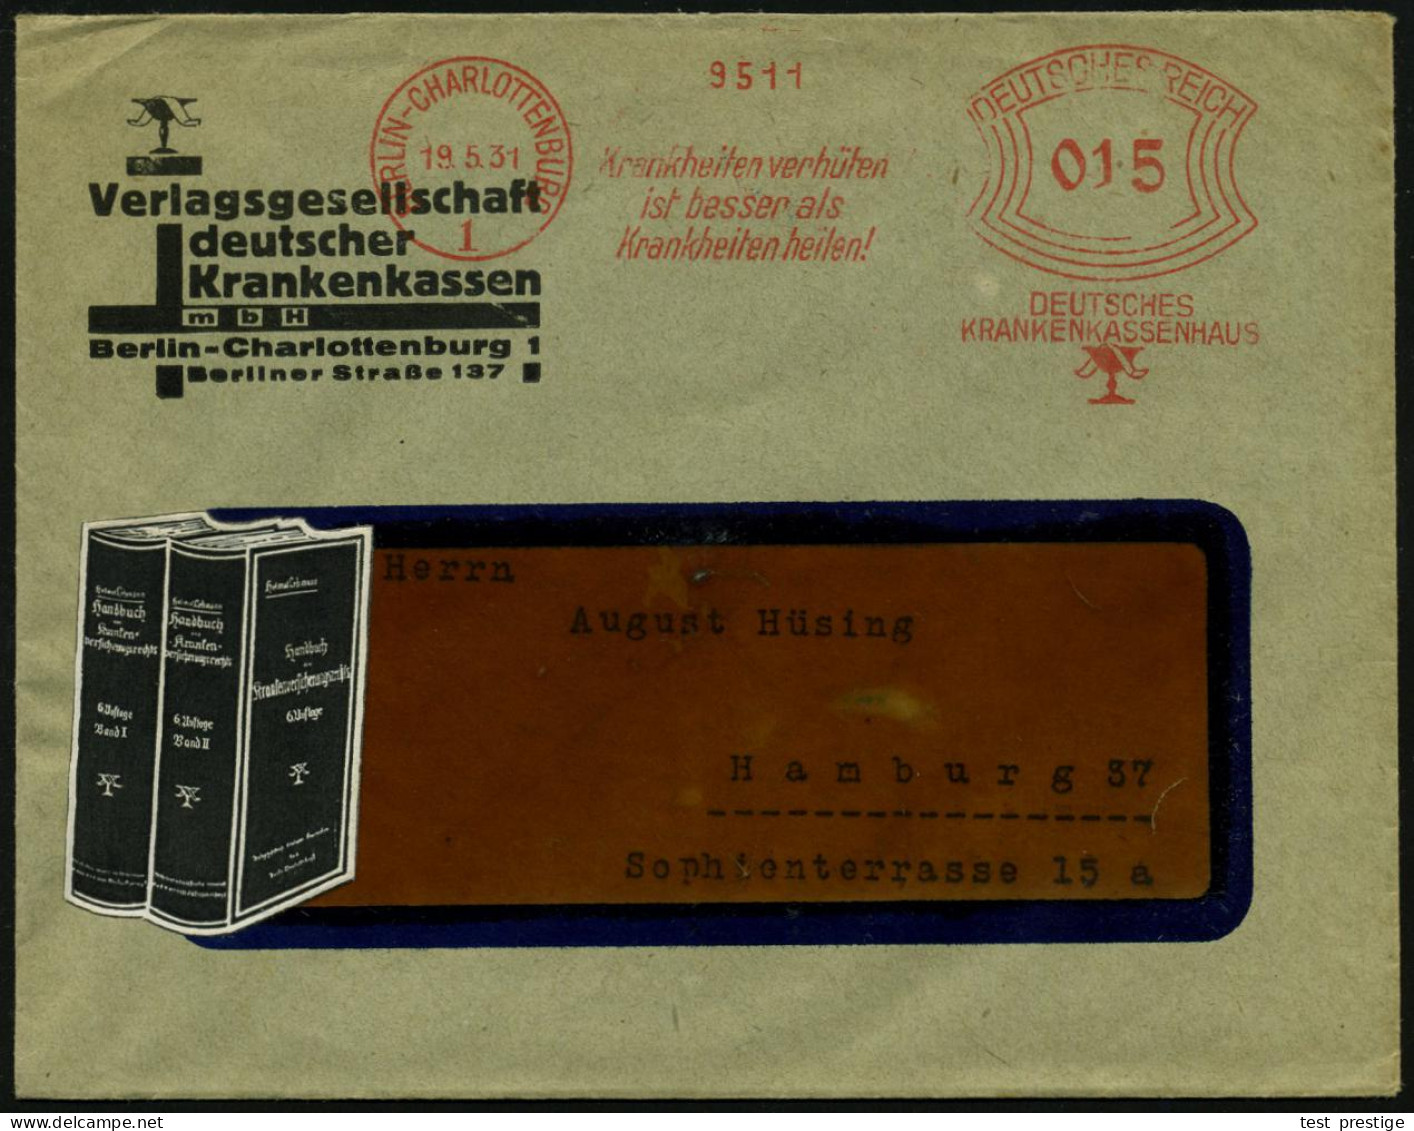 BERLIN-CHARLOTTENBURG/ 1/ Krankheiten Verhüten/ Ist Besser Als/ Krankheiten Heilen!/ DEUTSCHES/  KRANKENKASSENHAUS 1931  - Disease